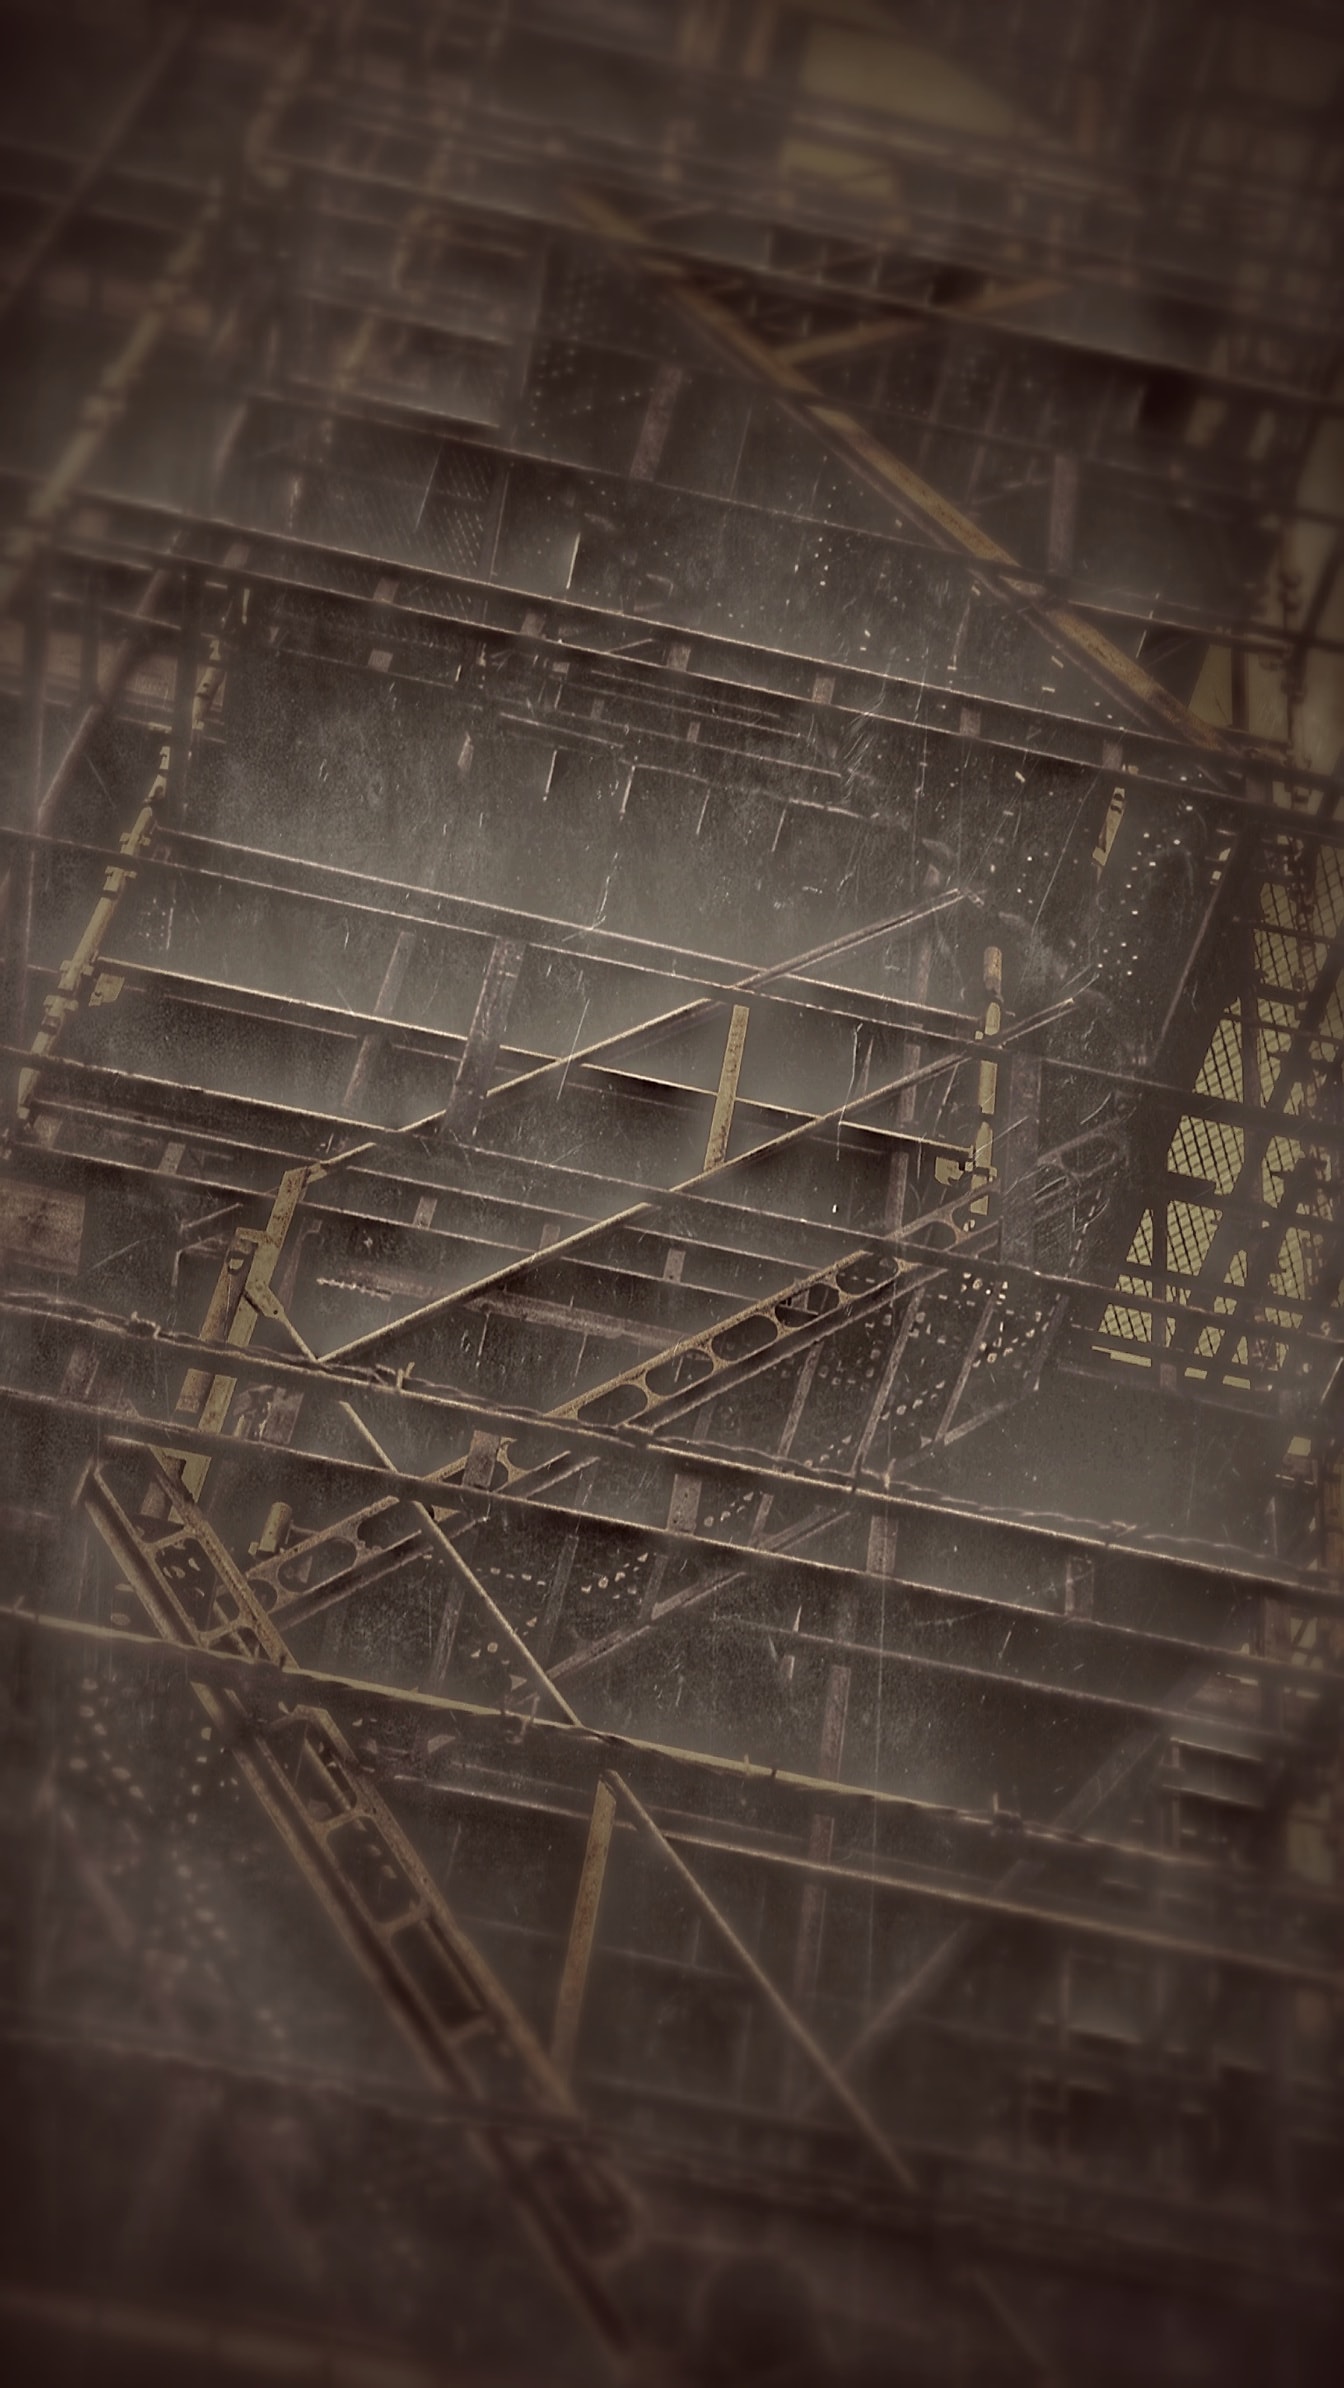 Inspirado por Alexey Titarenko escadas de aço no edifício sépia fotografia